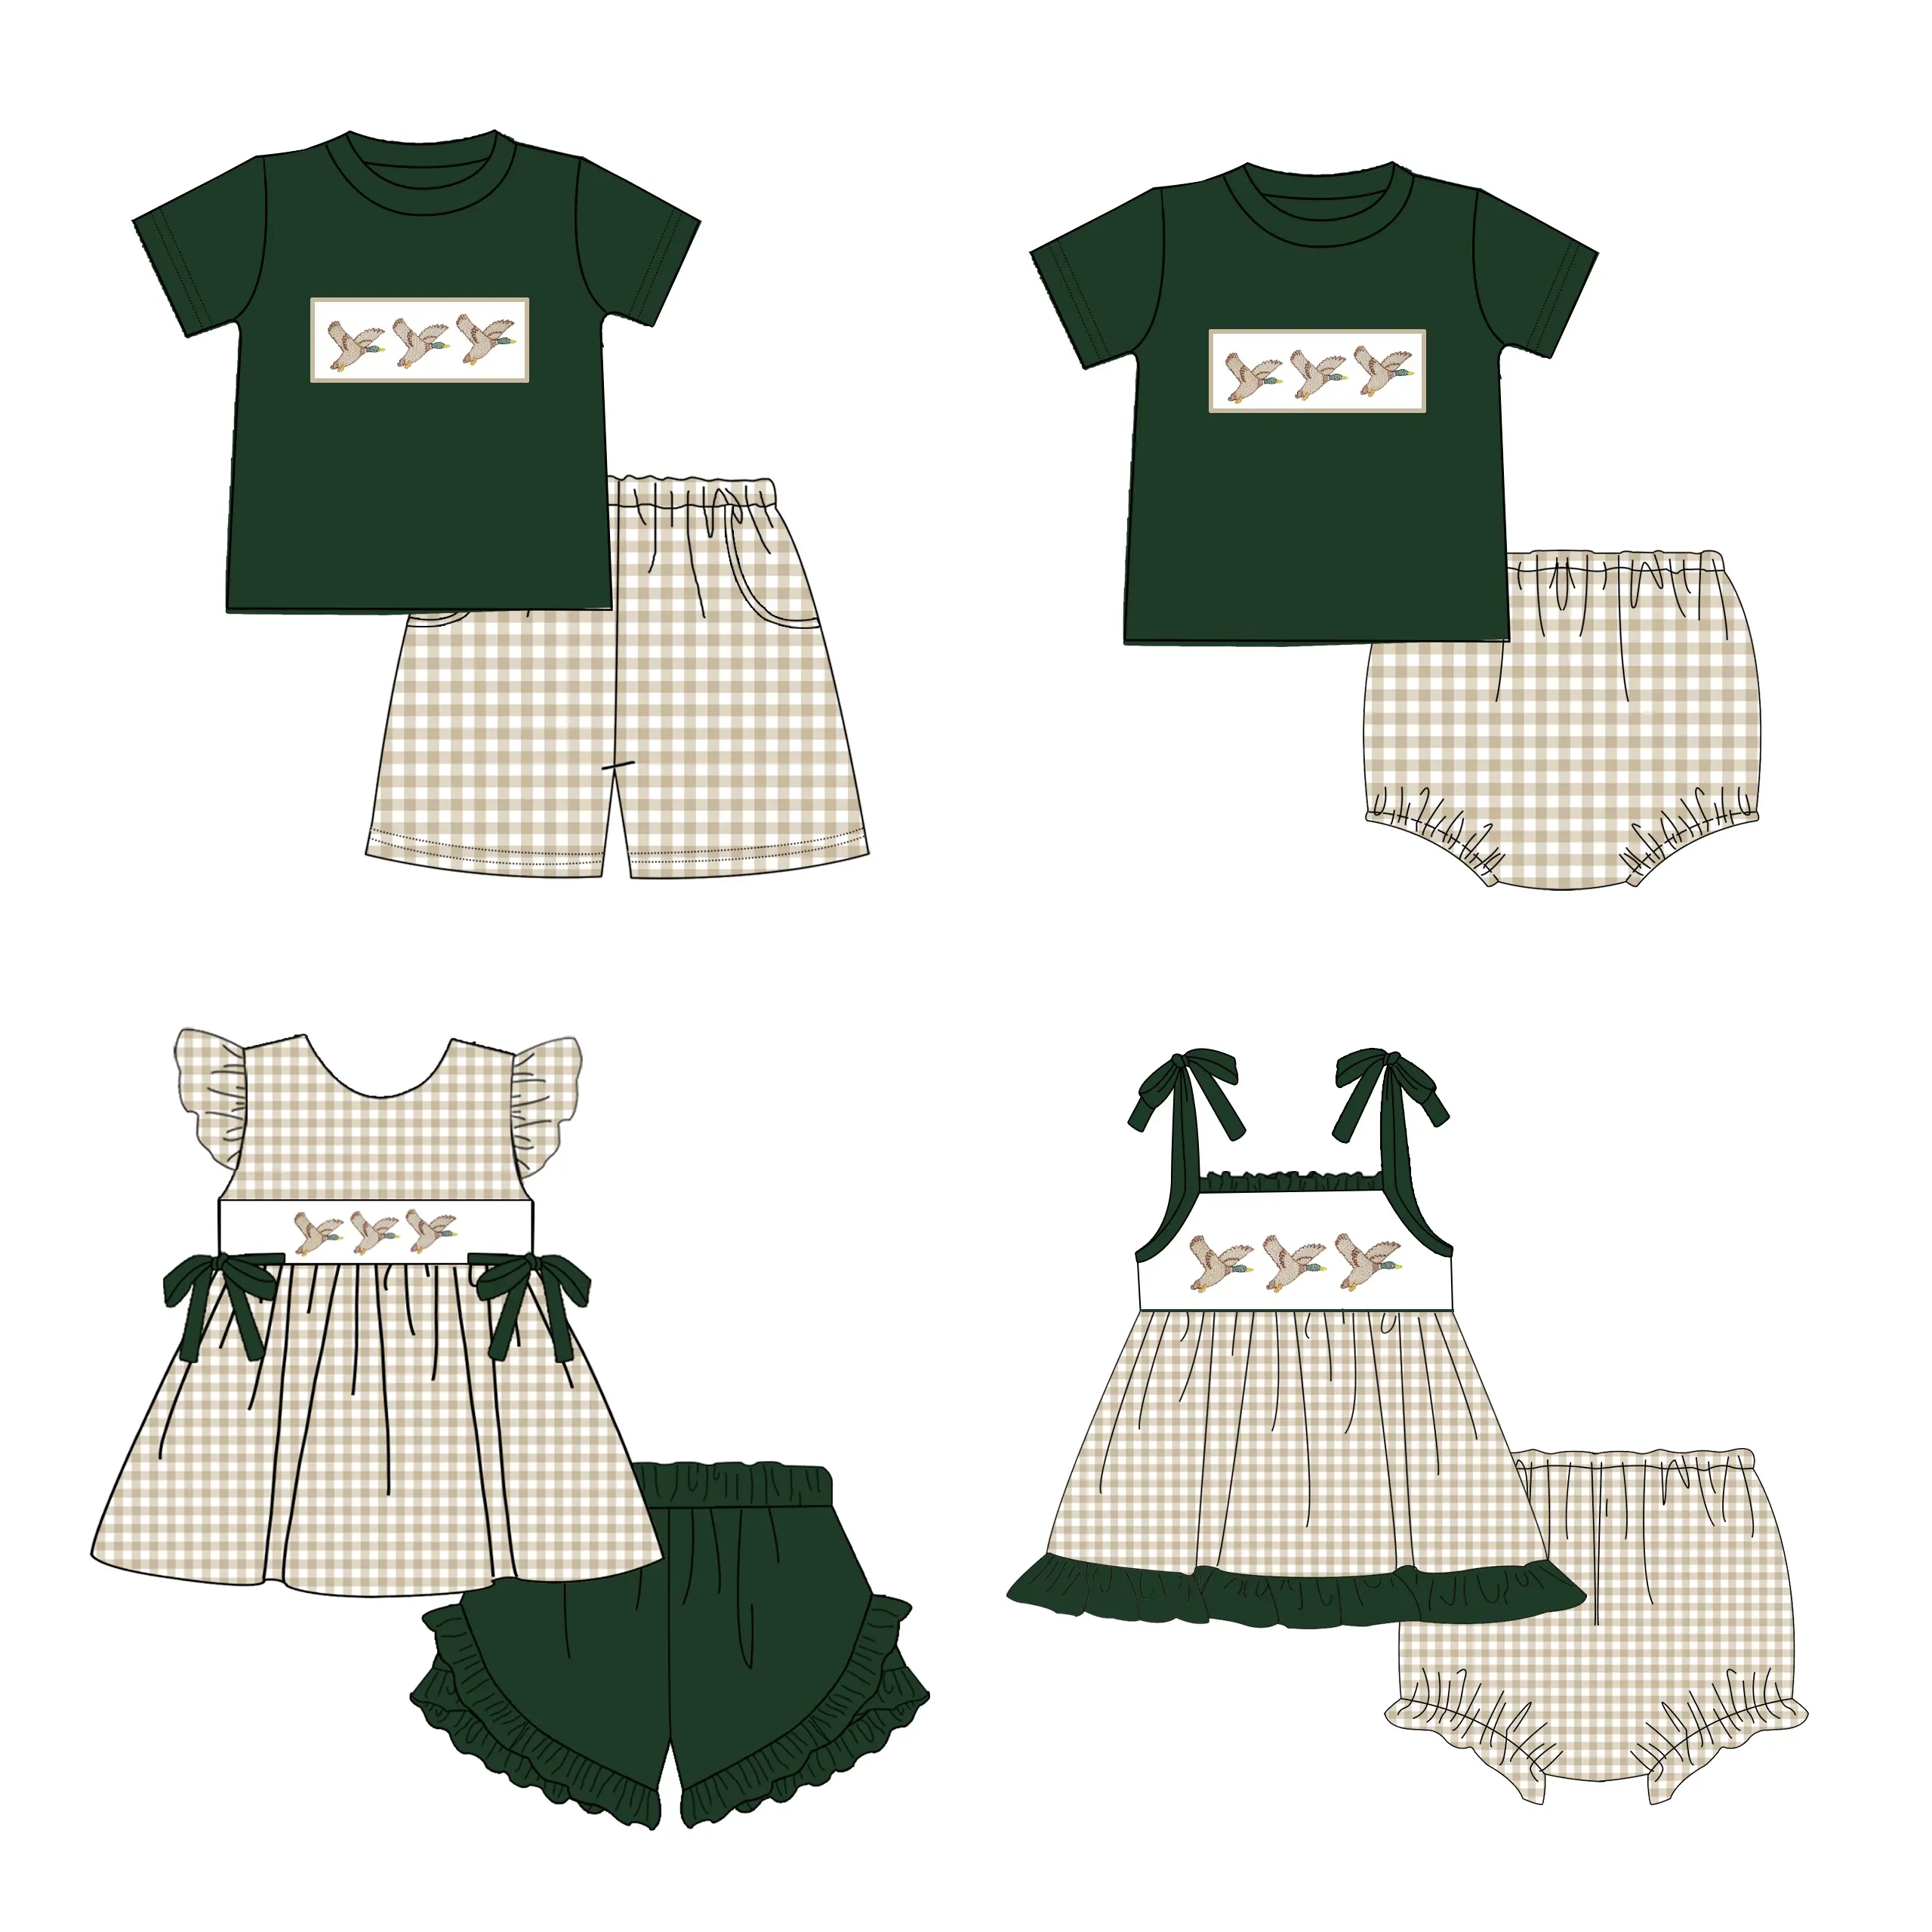 Puresun neueste Designs Kinder tragen Kleidung Jagd Mallard Duck Patch Bestickte Baumwolle Baby Jungen Kleidung Sets